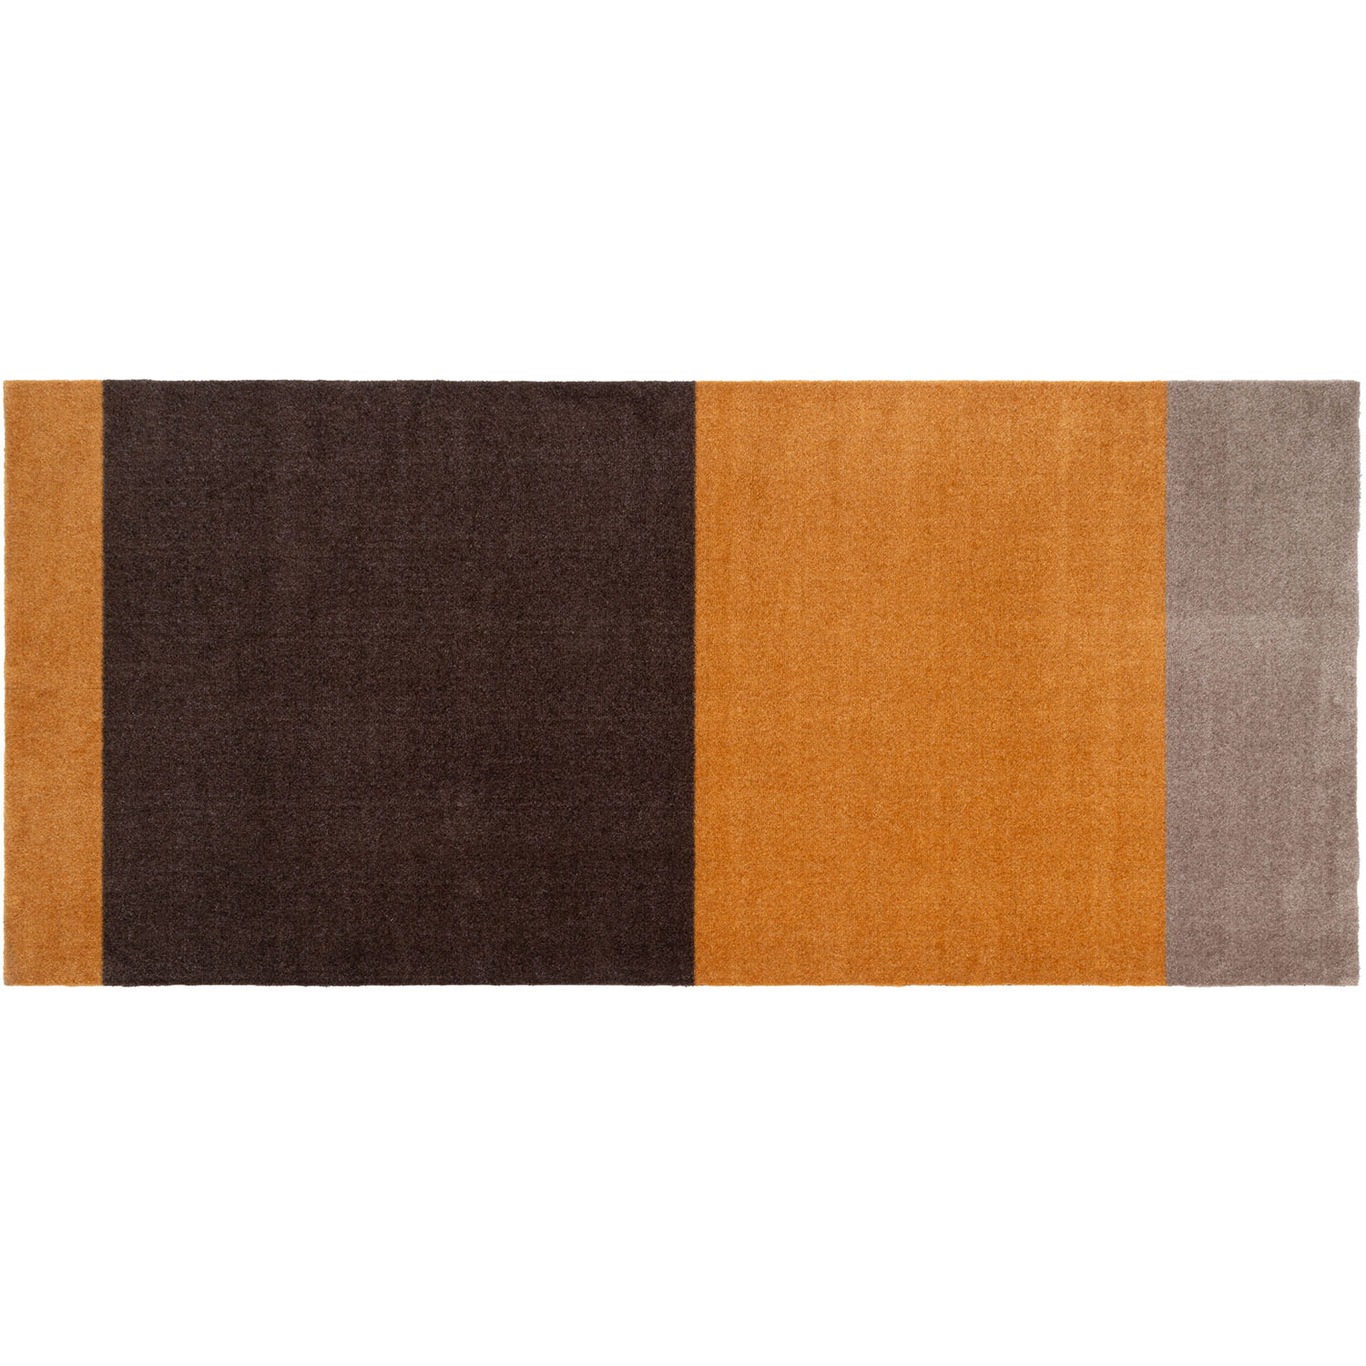 Stripes Teppich Dijon/Braun, 90x200 cm